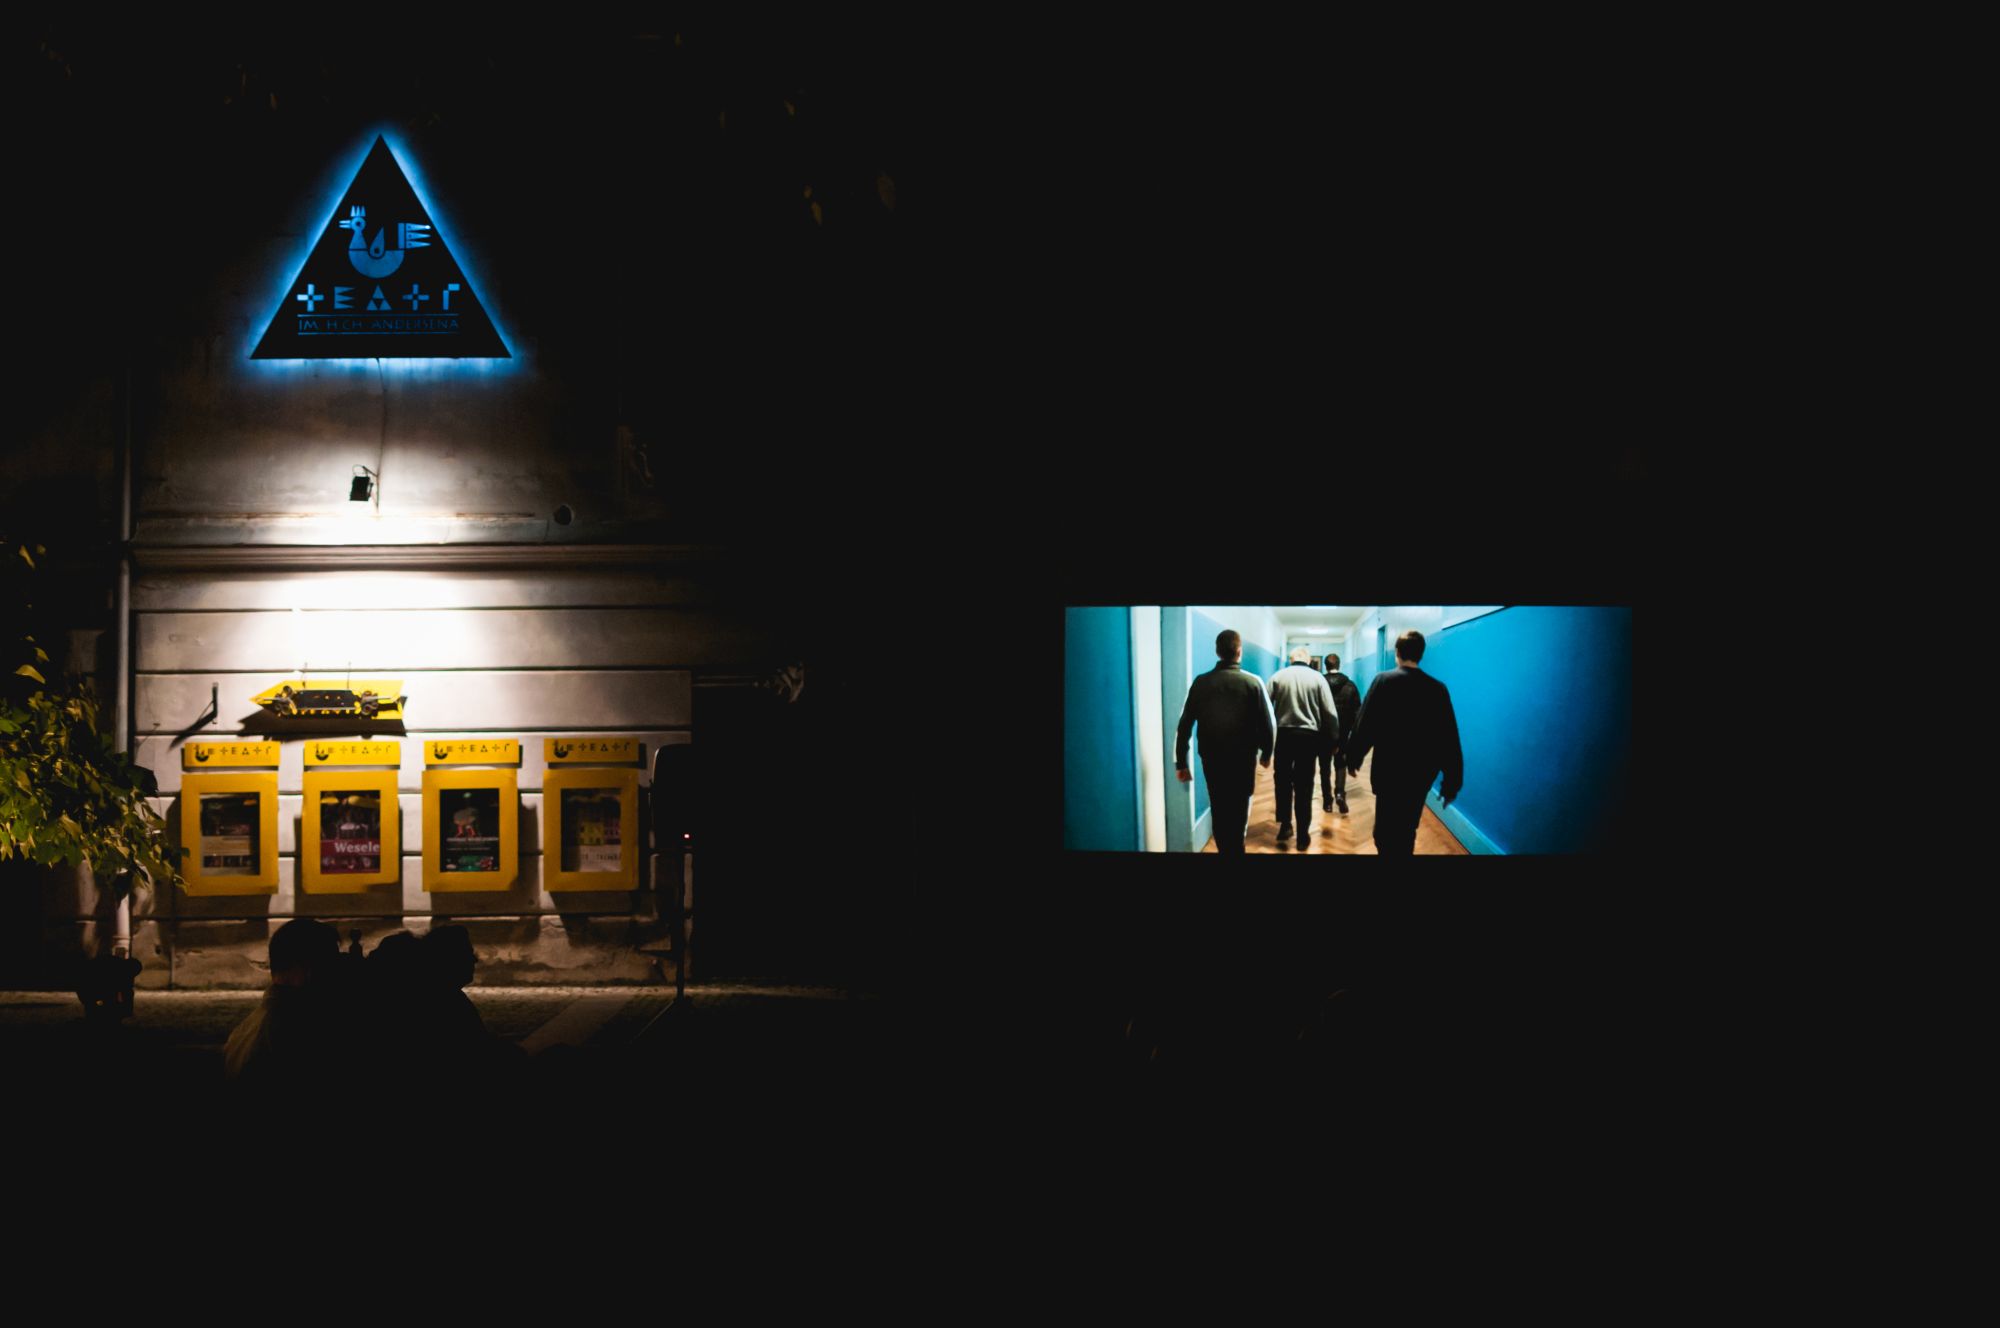 [Plac przed Teatrem Andersena. Wieczorny seans filmowy w ramach wydarzenia Move East Movie. Z lewej strony widoczne logo teatru, z prawej ekran z wyświetlanym filmem.]